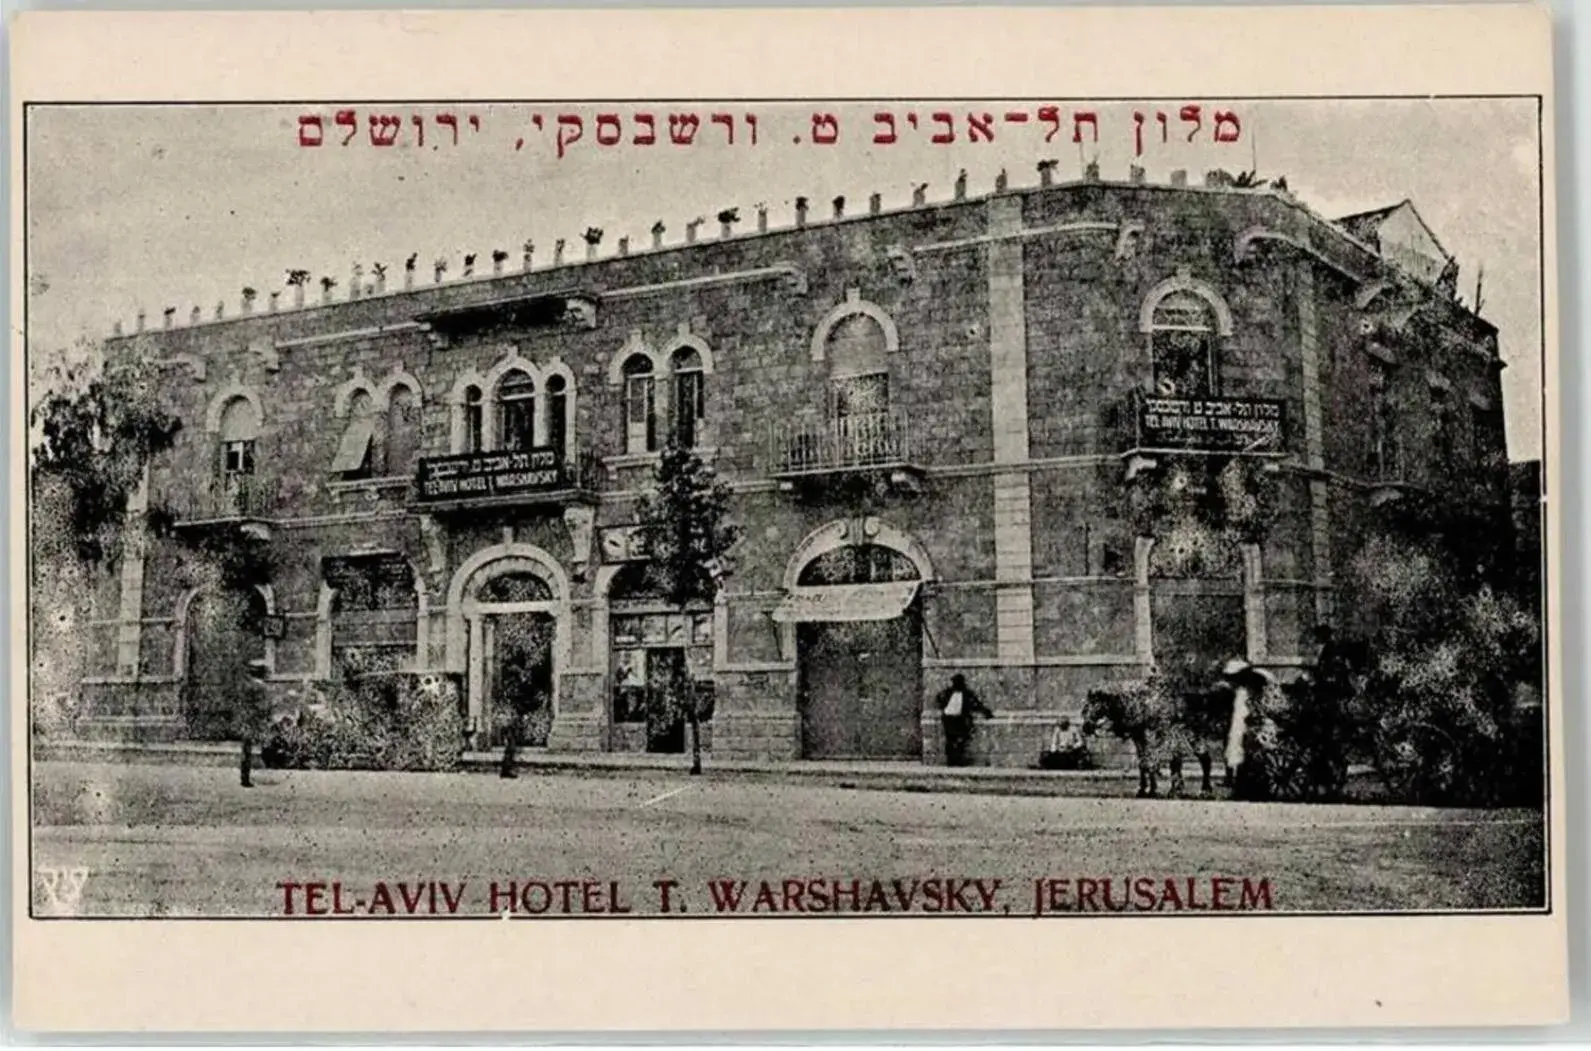 Jerusalem Hostel